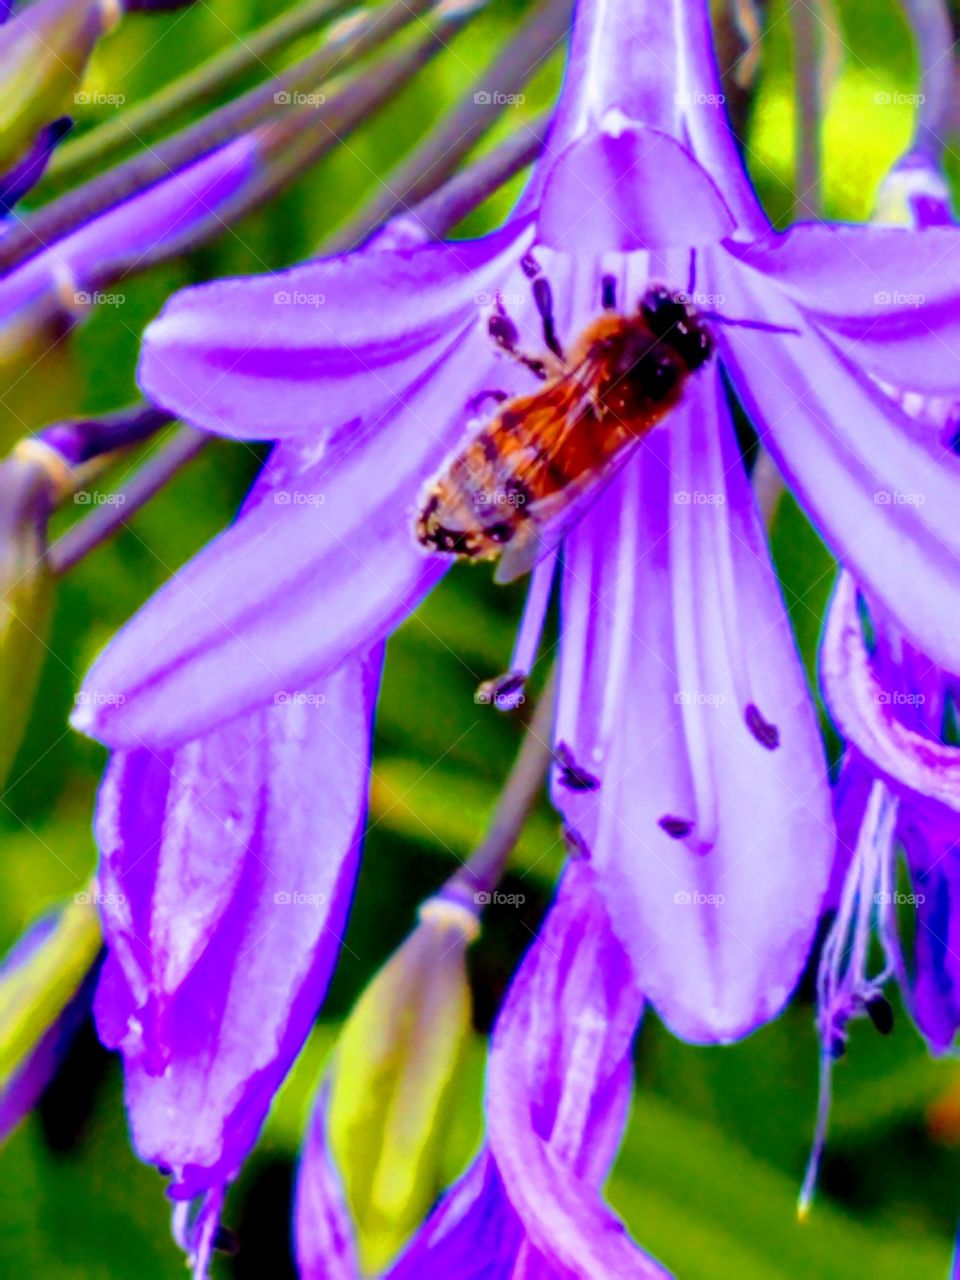 Honey Bee on Violet Flowers in Summer